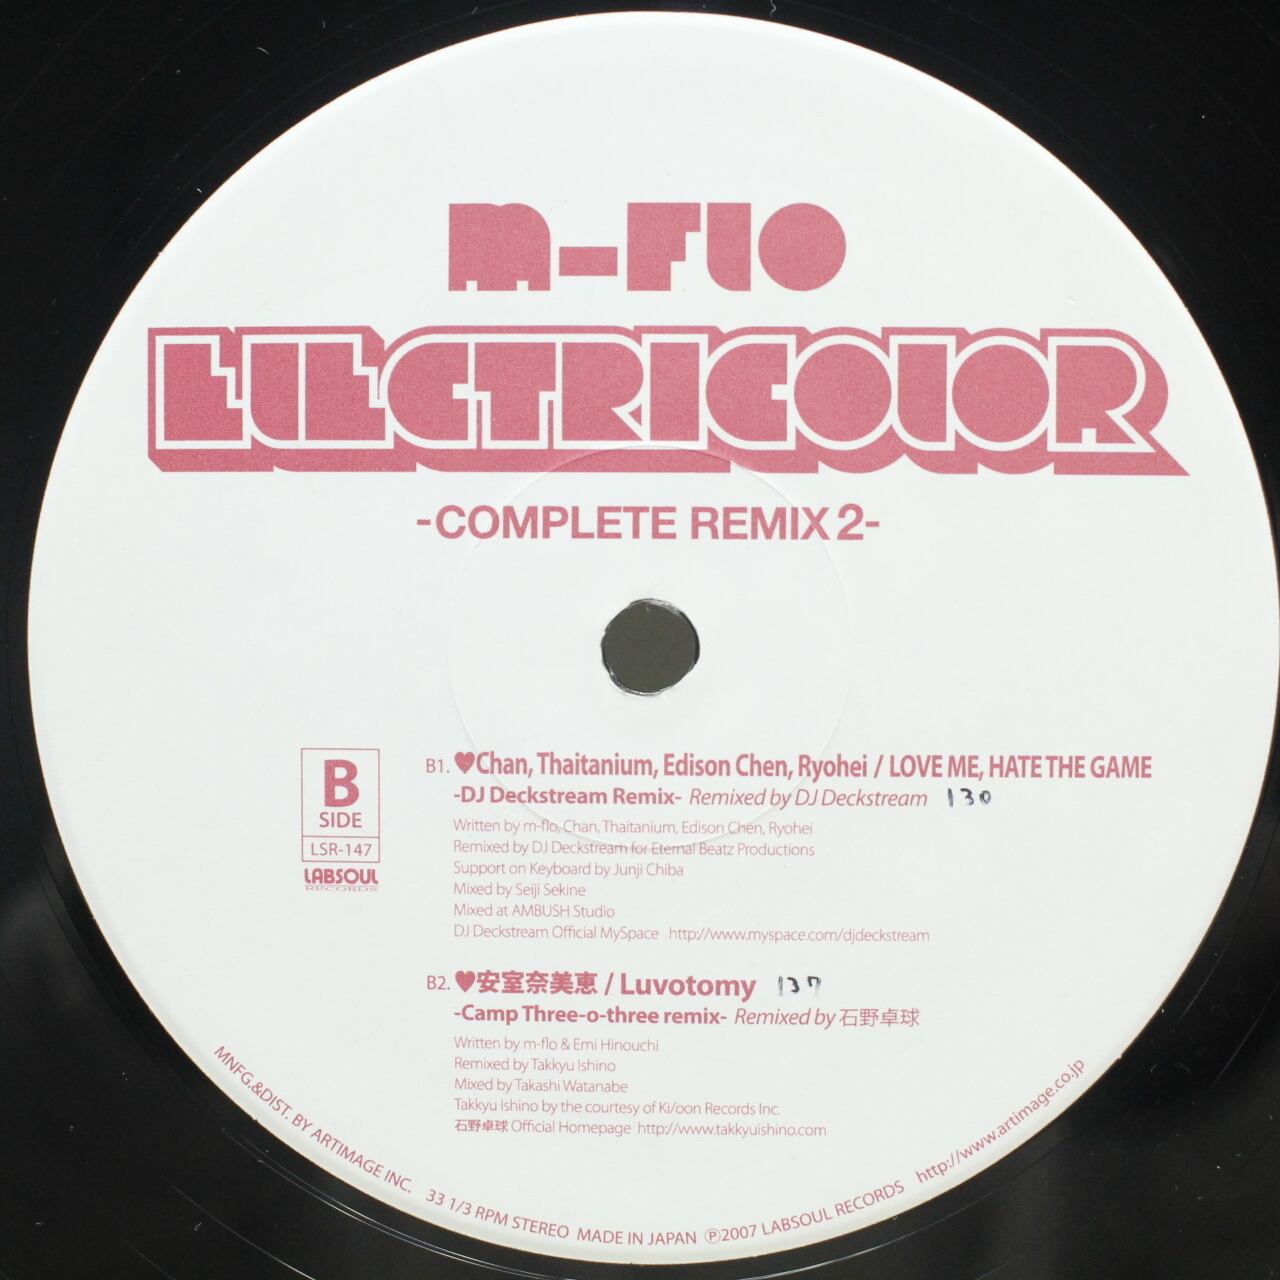 m-flo / Electricolor (Complete Remix 2) [LSR-147] - 画像2